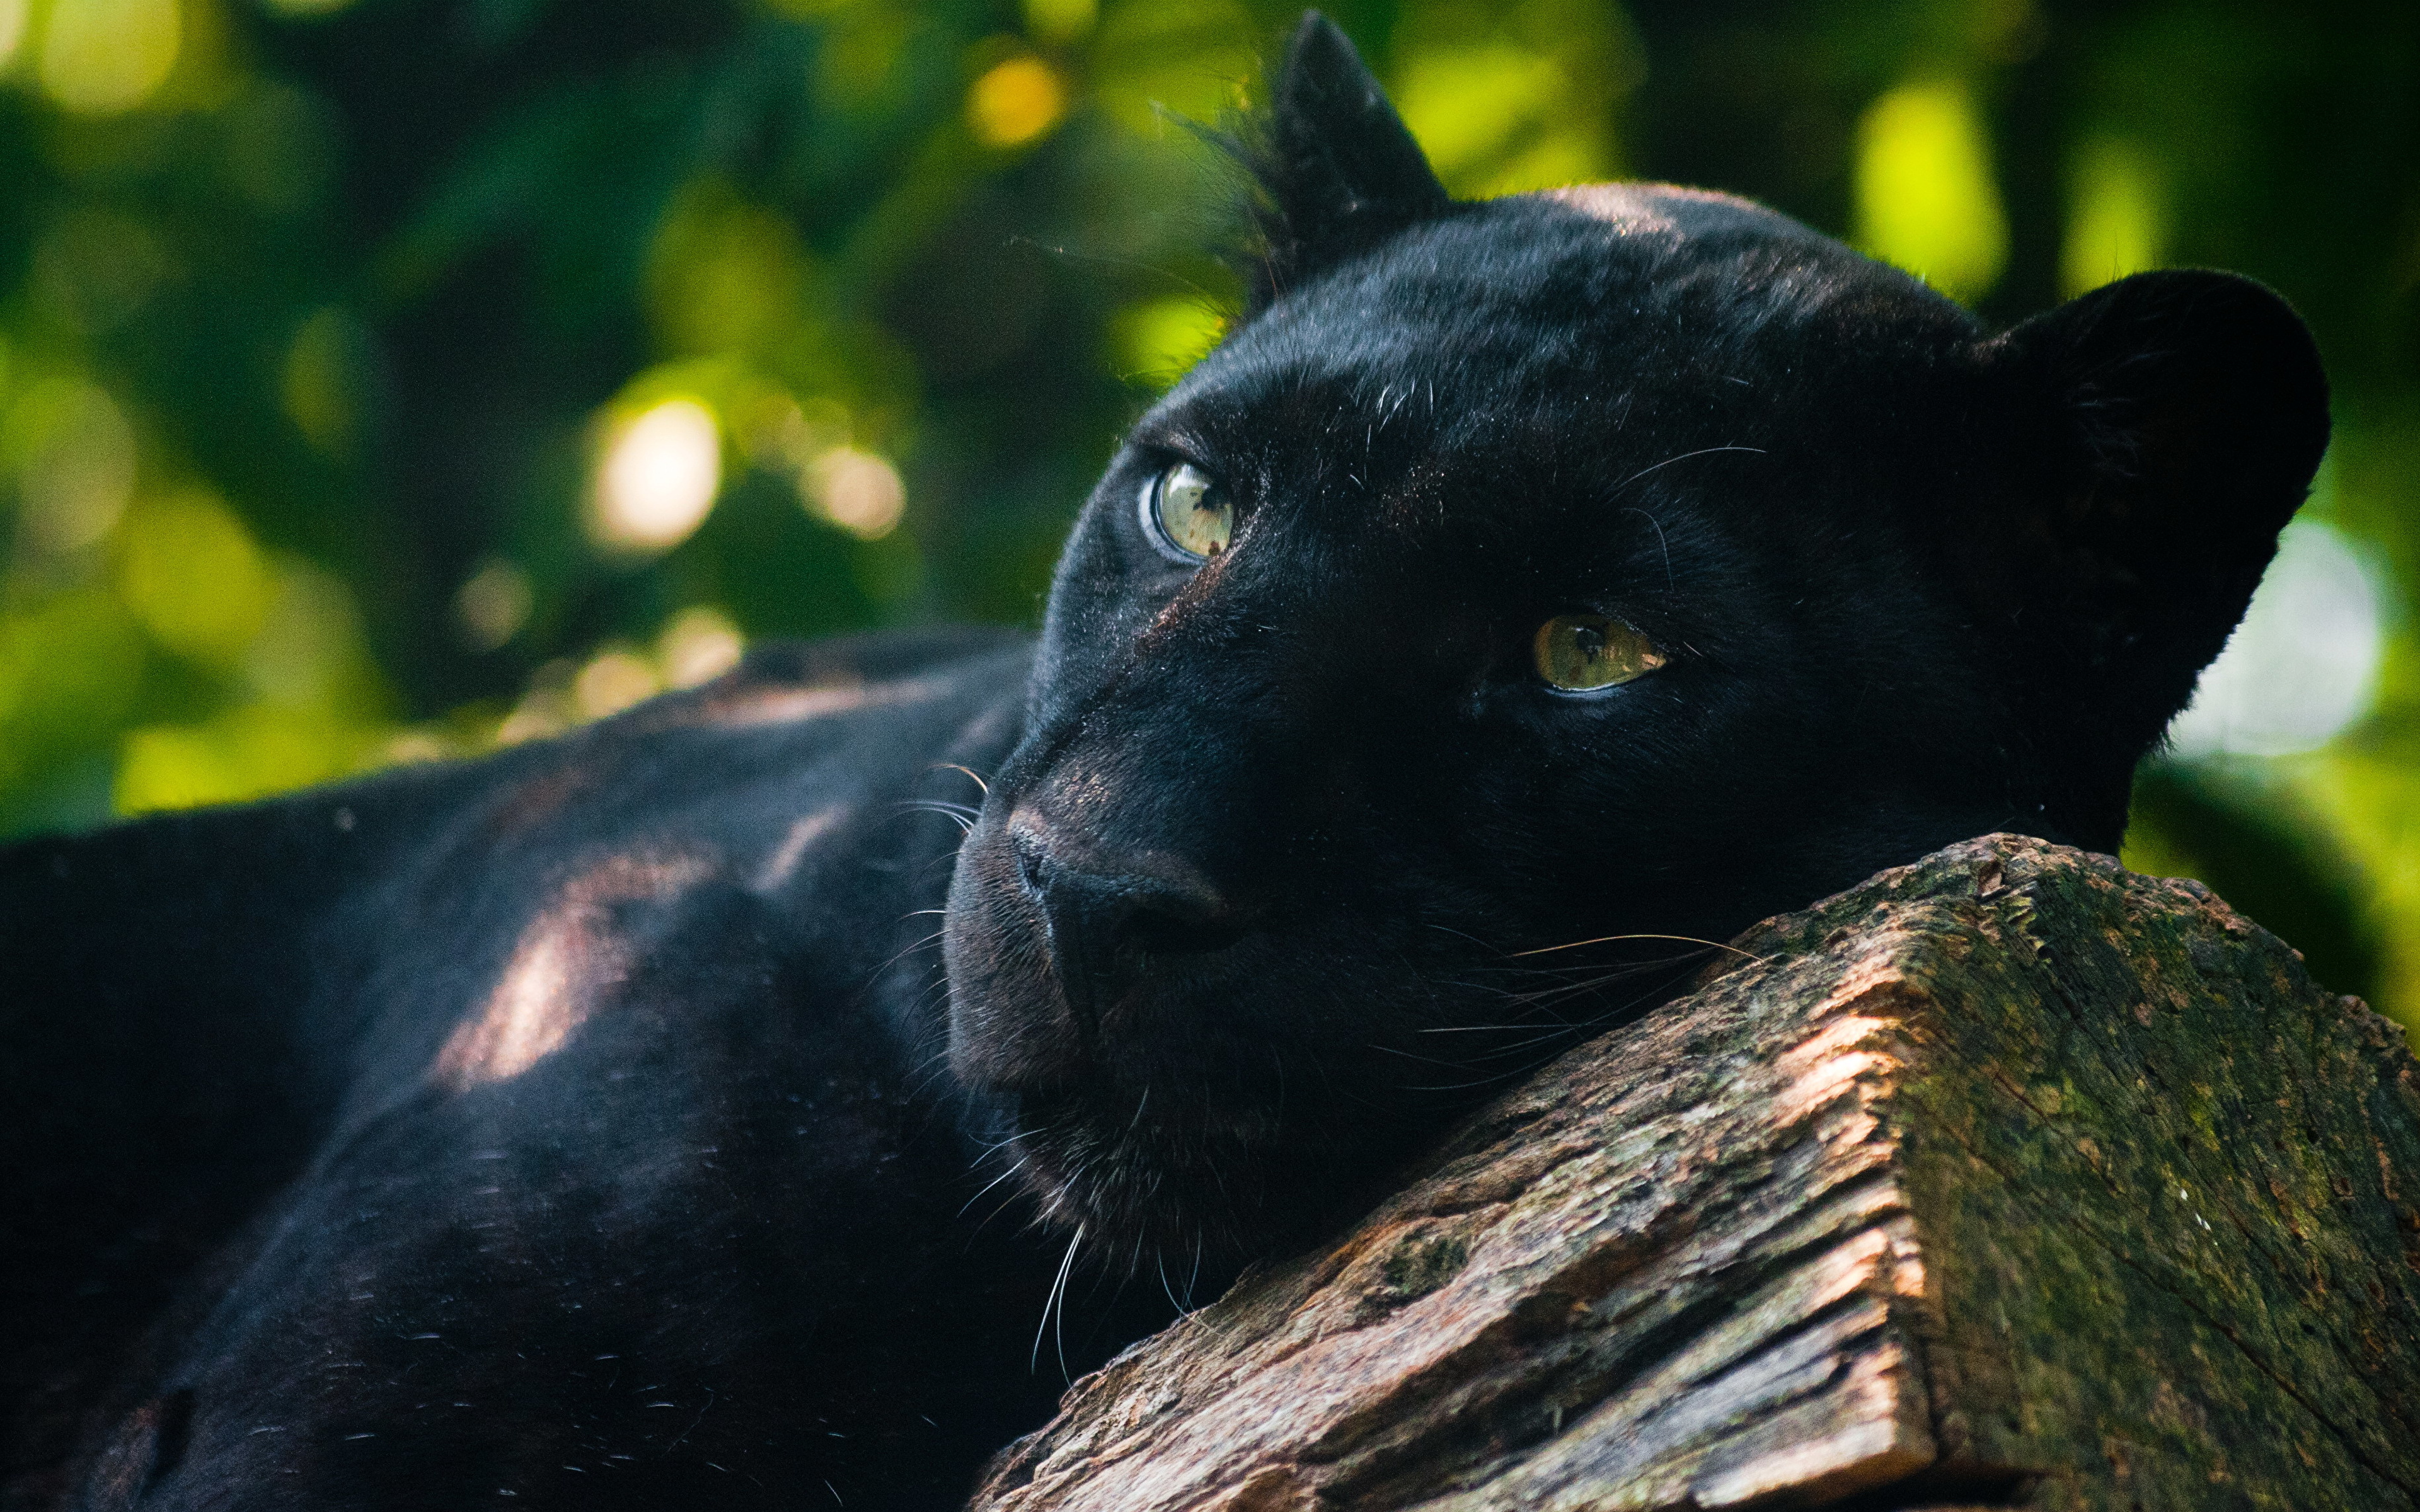 Fondos de Pantalla 3840x2400 Grandes felinos Pantera negra Animalia  descargar imagenes